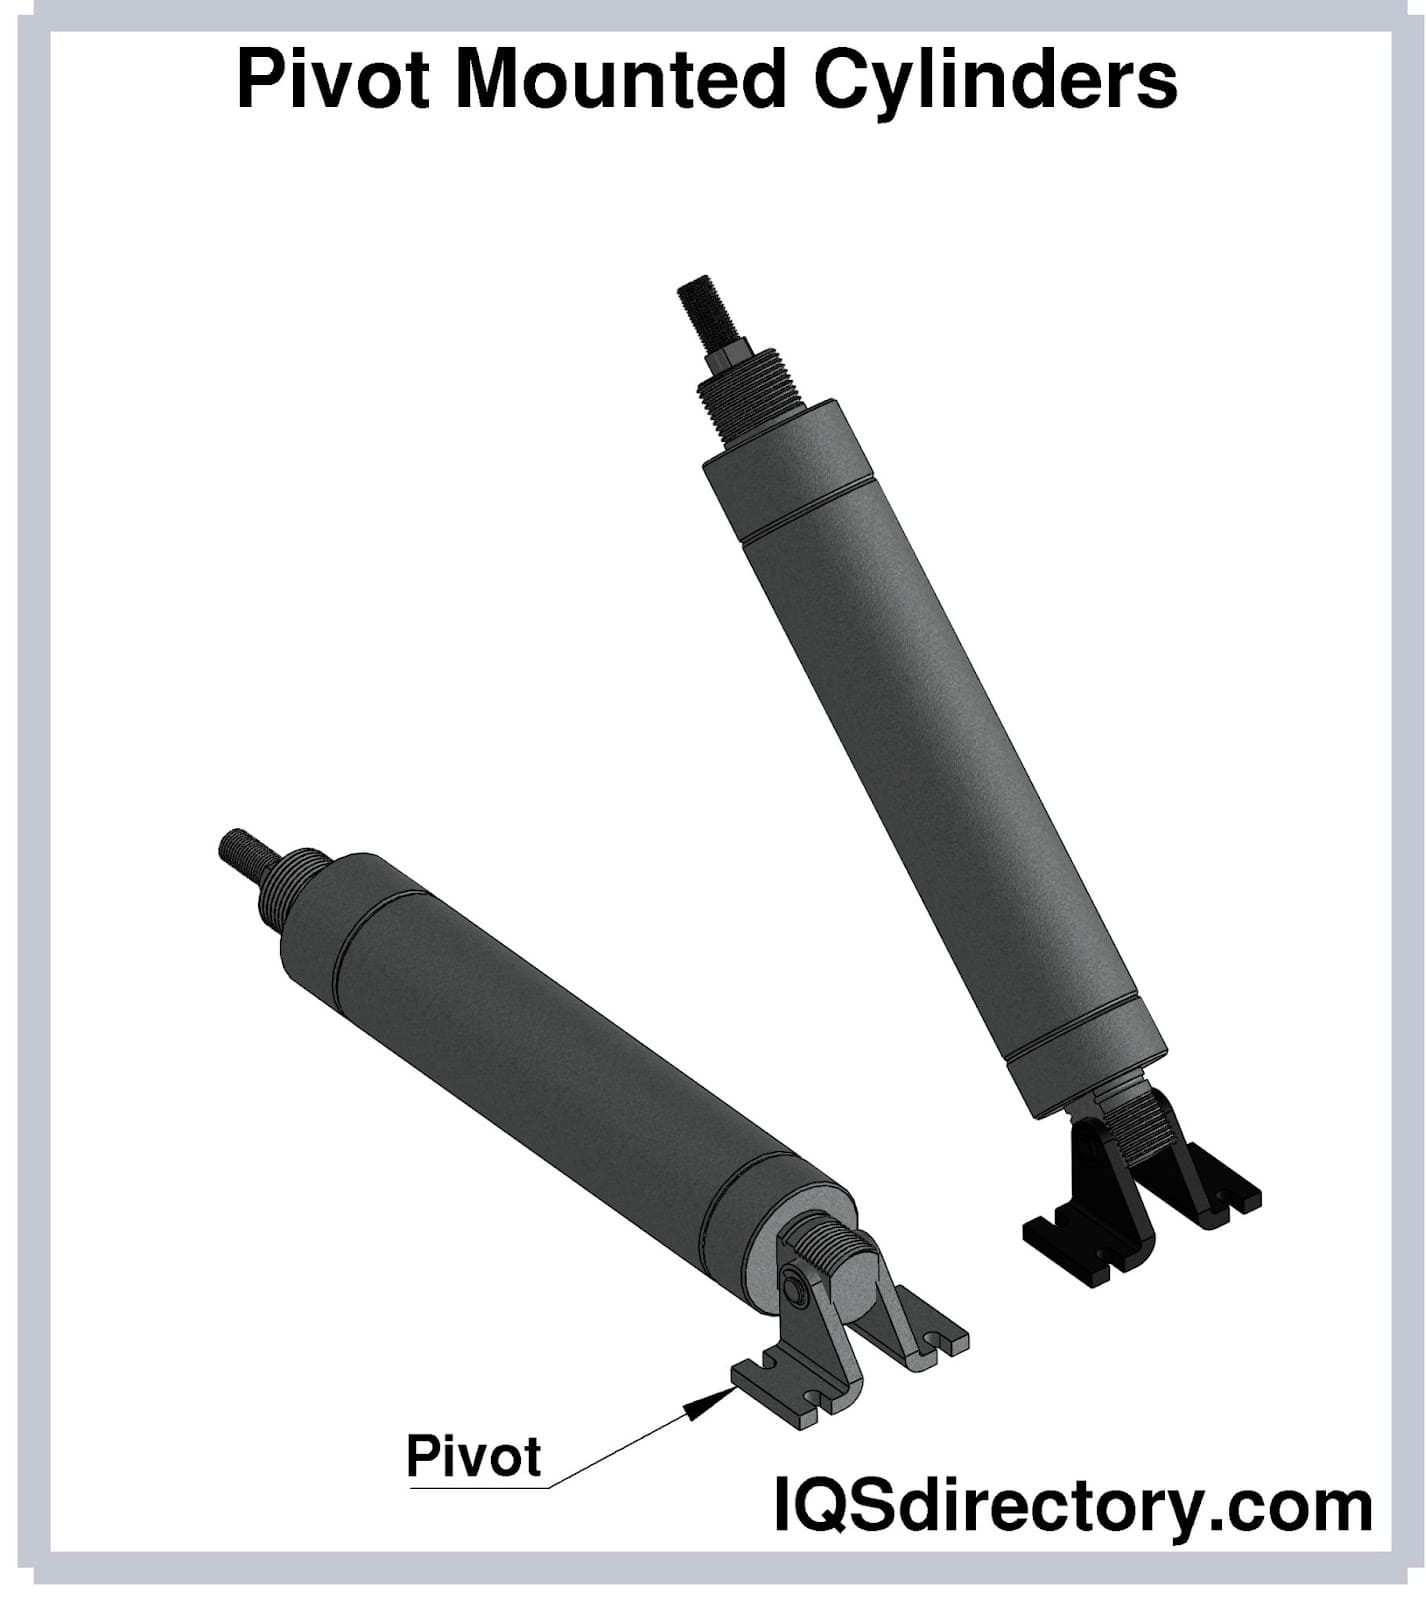 Pivot Mounted Cylinders